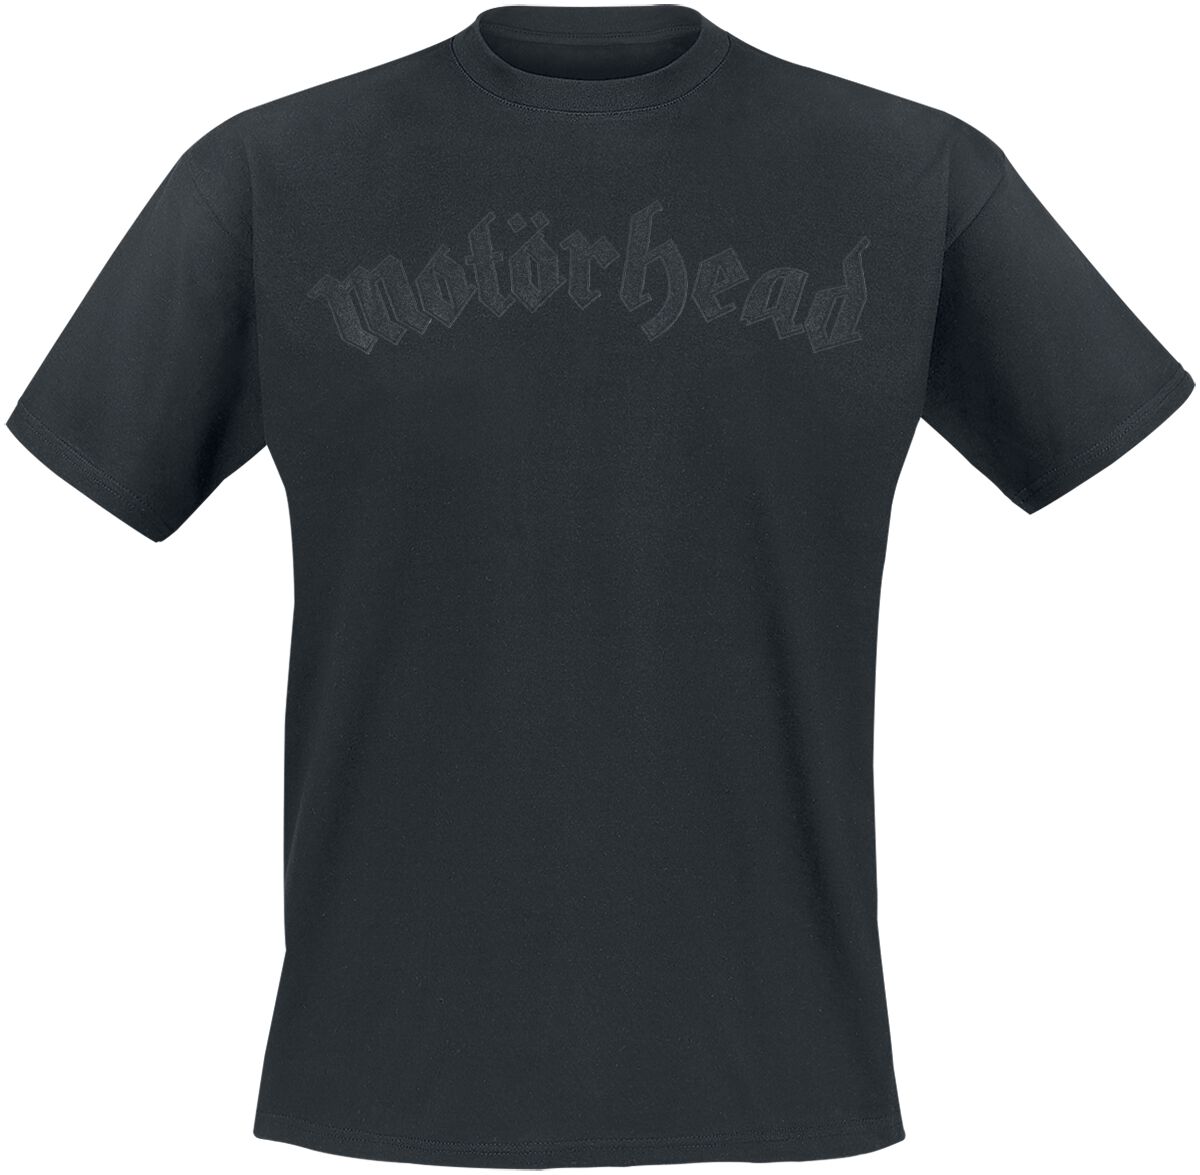 Motörhead T-Shirt - Black On Black Logo - S bis 4XL - für Männer - Größe 4XL - schwarz  - Lizenziertes Merchandise!